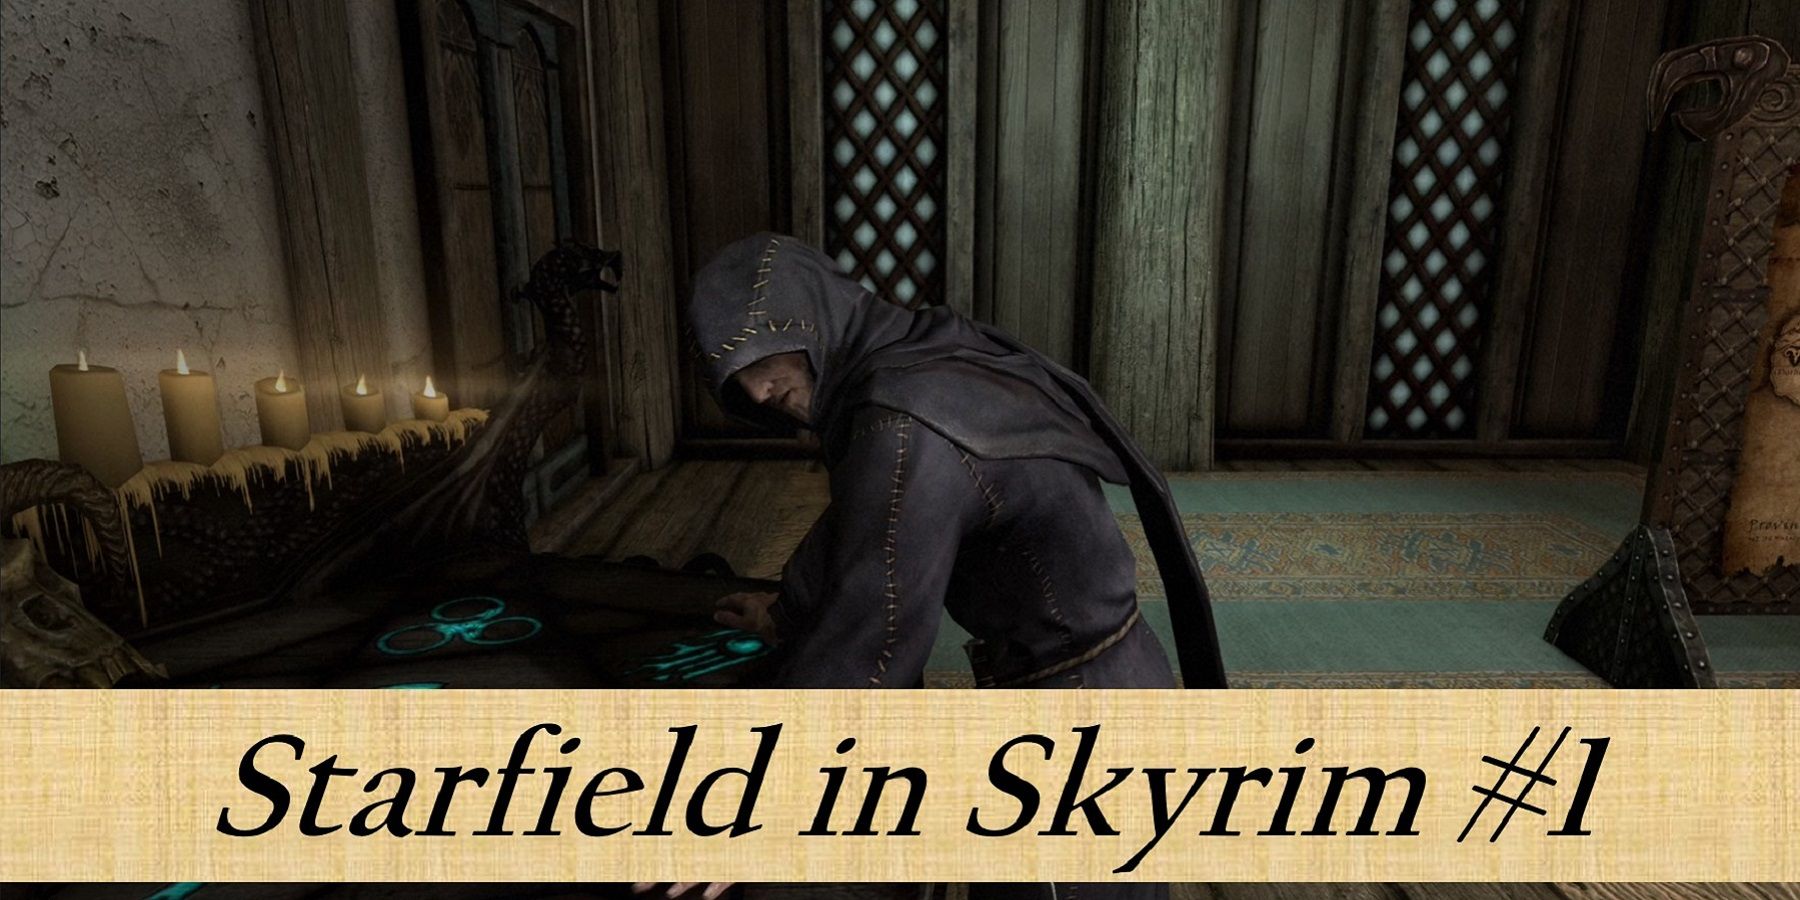 Afbeelding uit Skyrim met een necromancer en tekst onderaan 